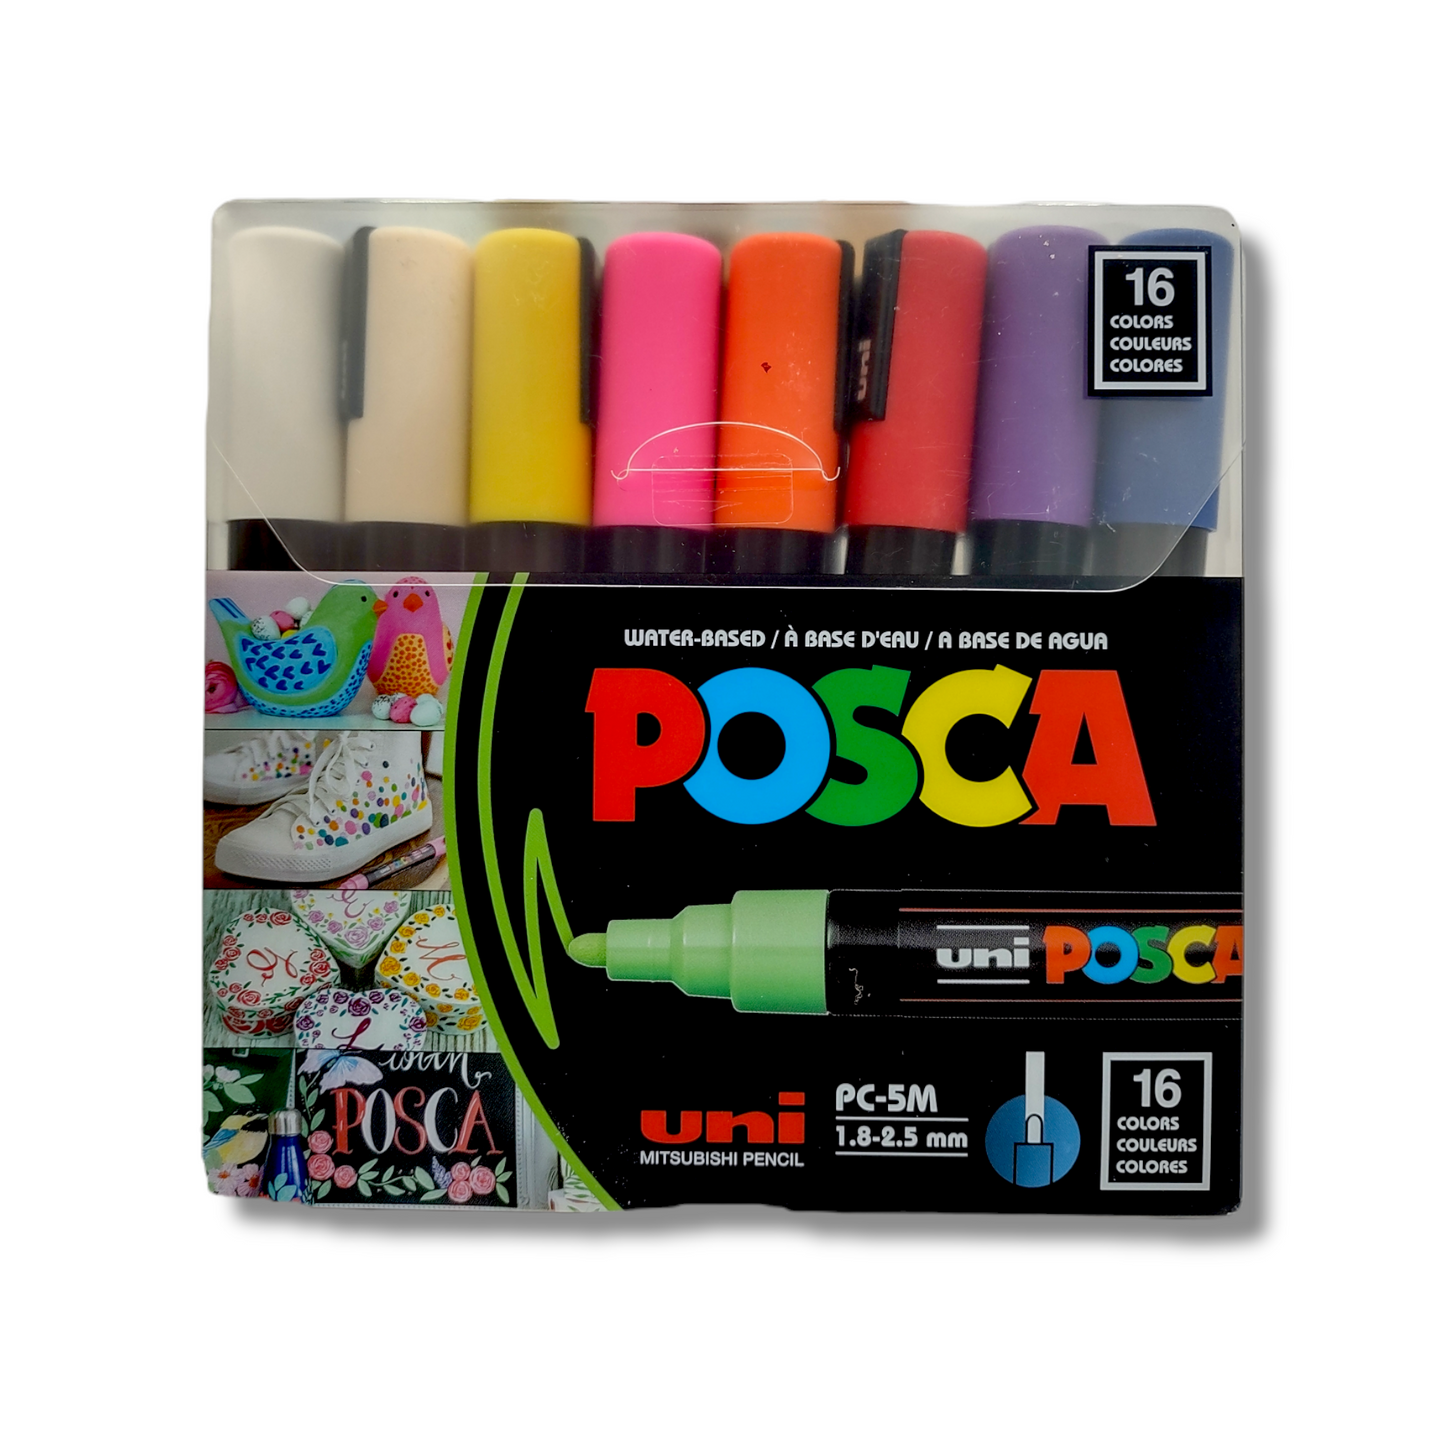 POSCA Marker Packs